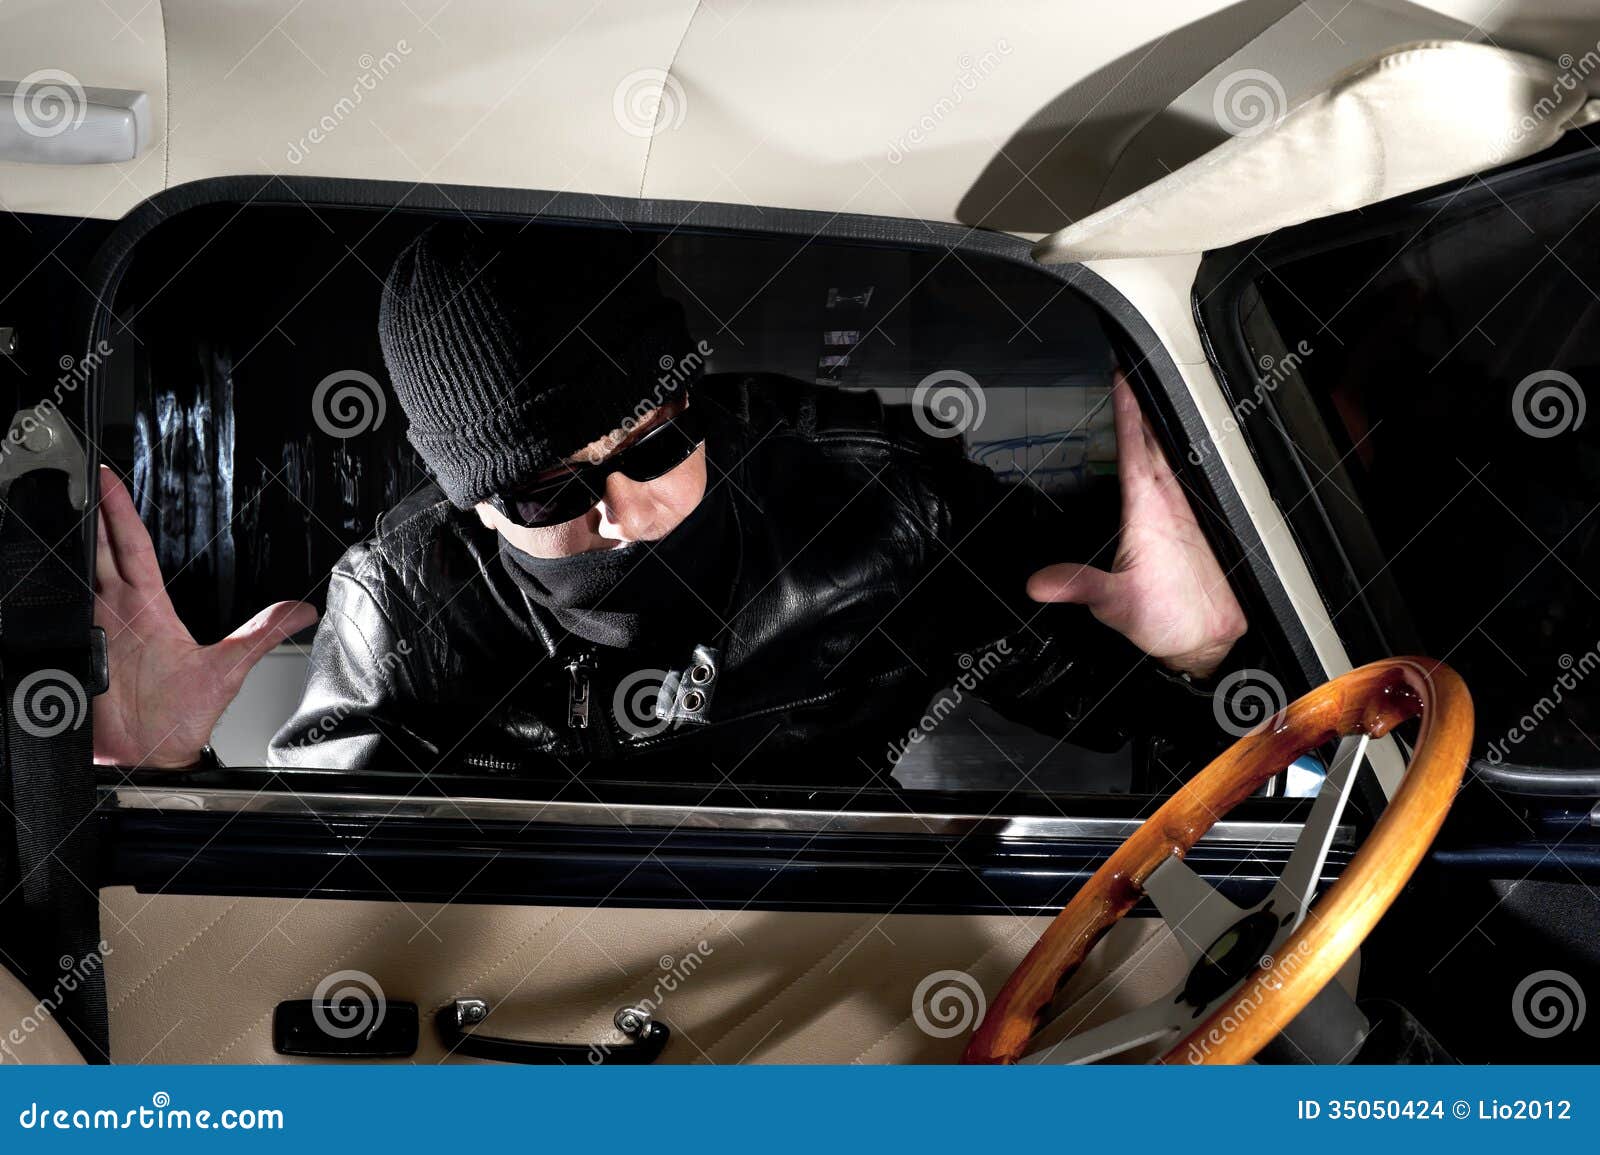 clipart car thief - photo #12